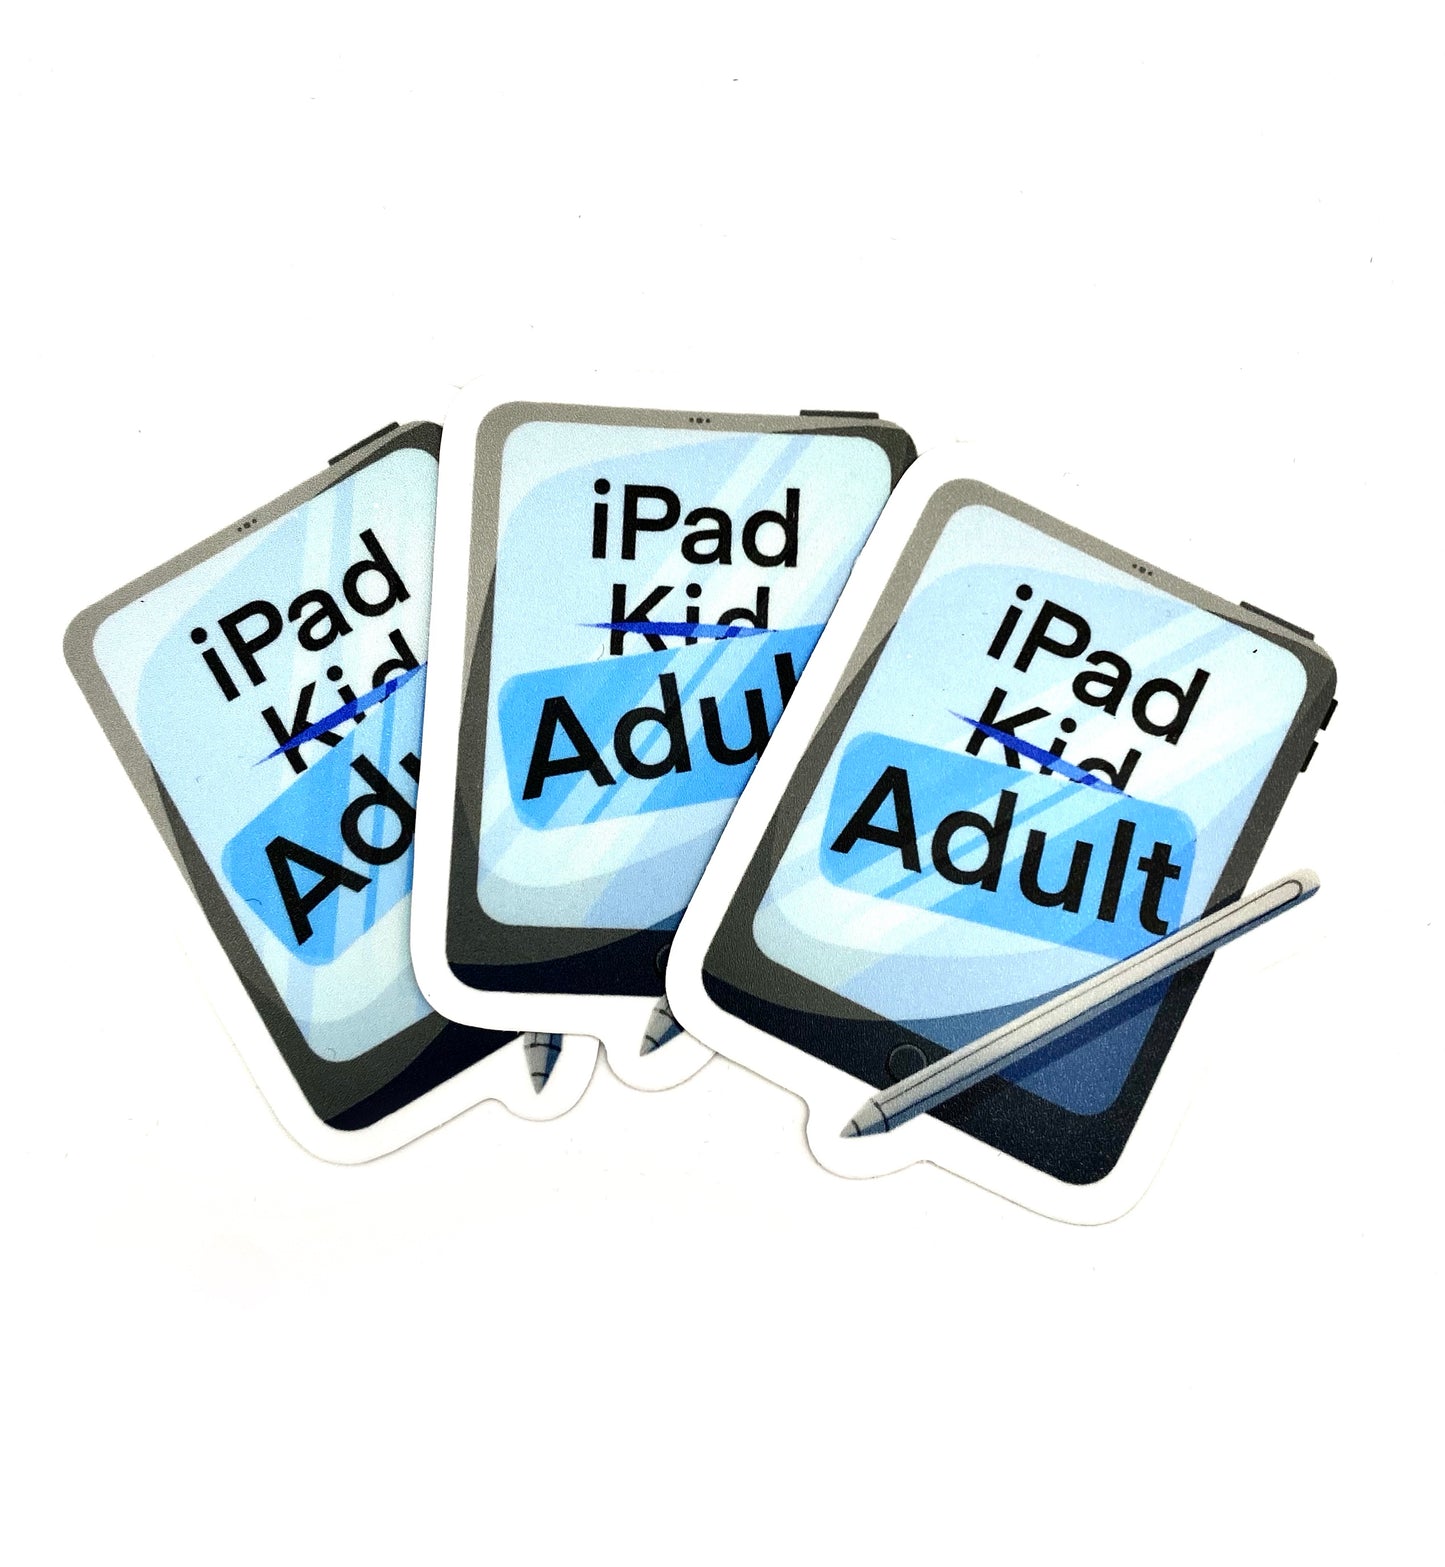 iPad Adult Sticker